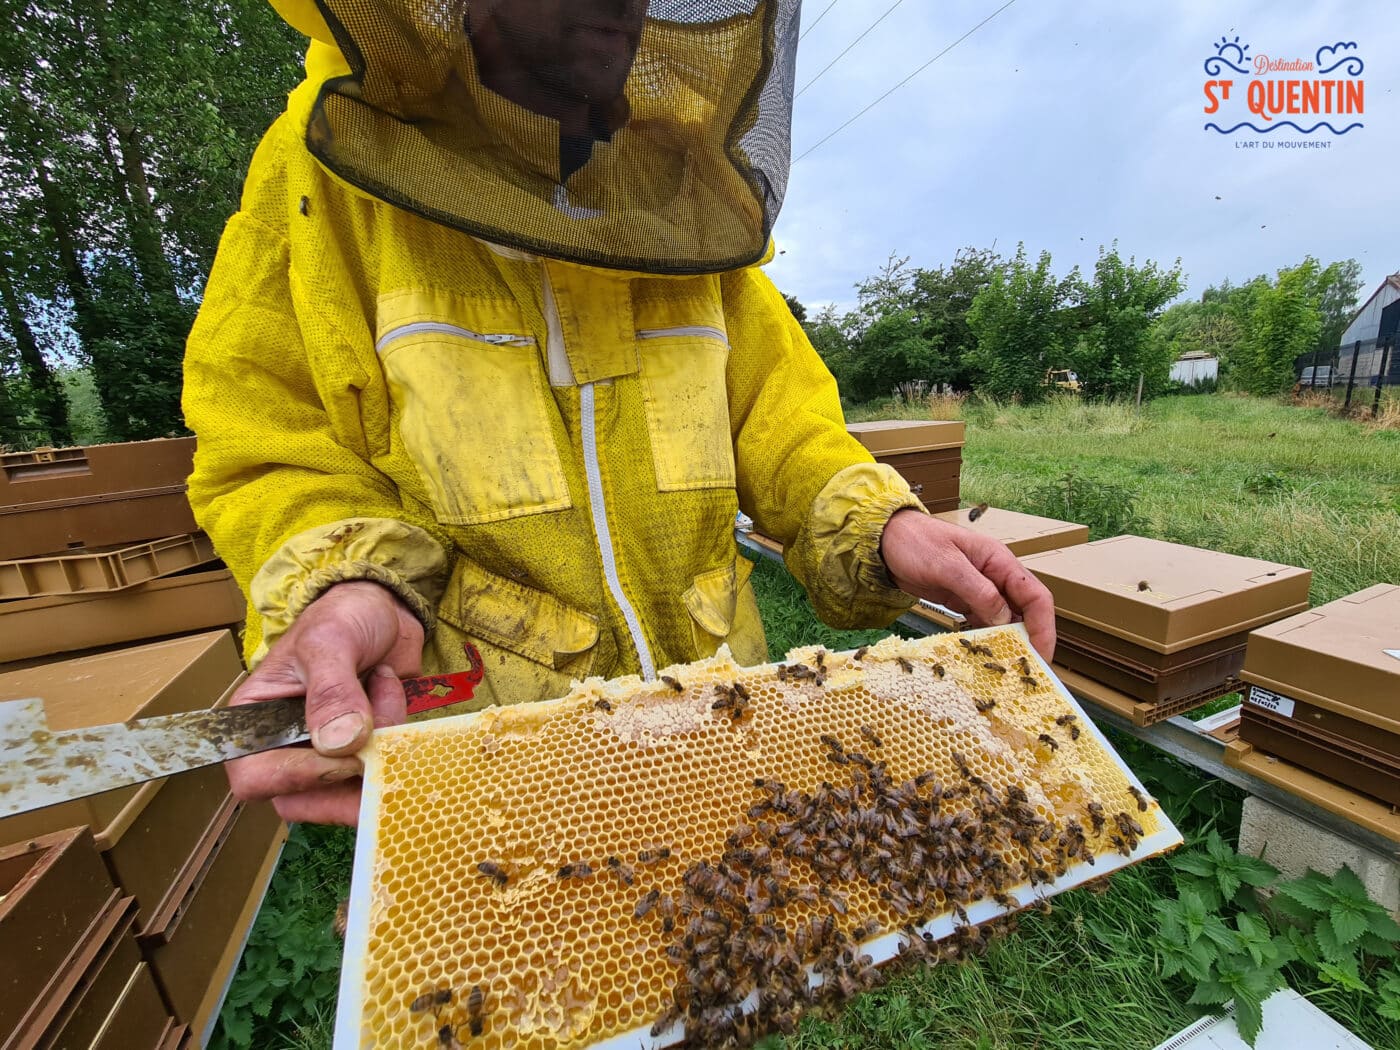 ambassadeur les abeilles de francilly 22 - Office de tourisme du Saint-Quentinois